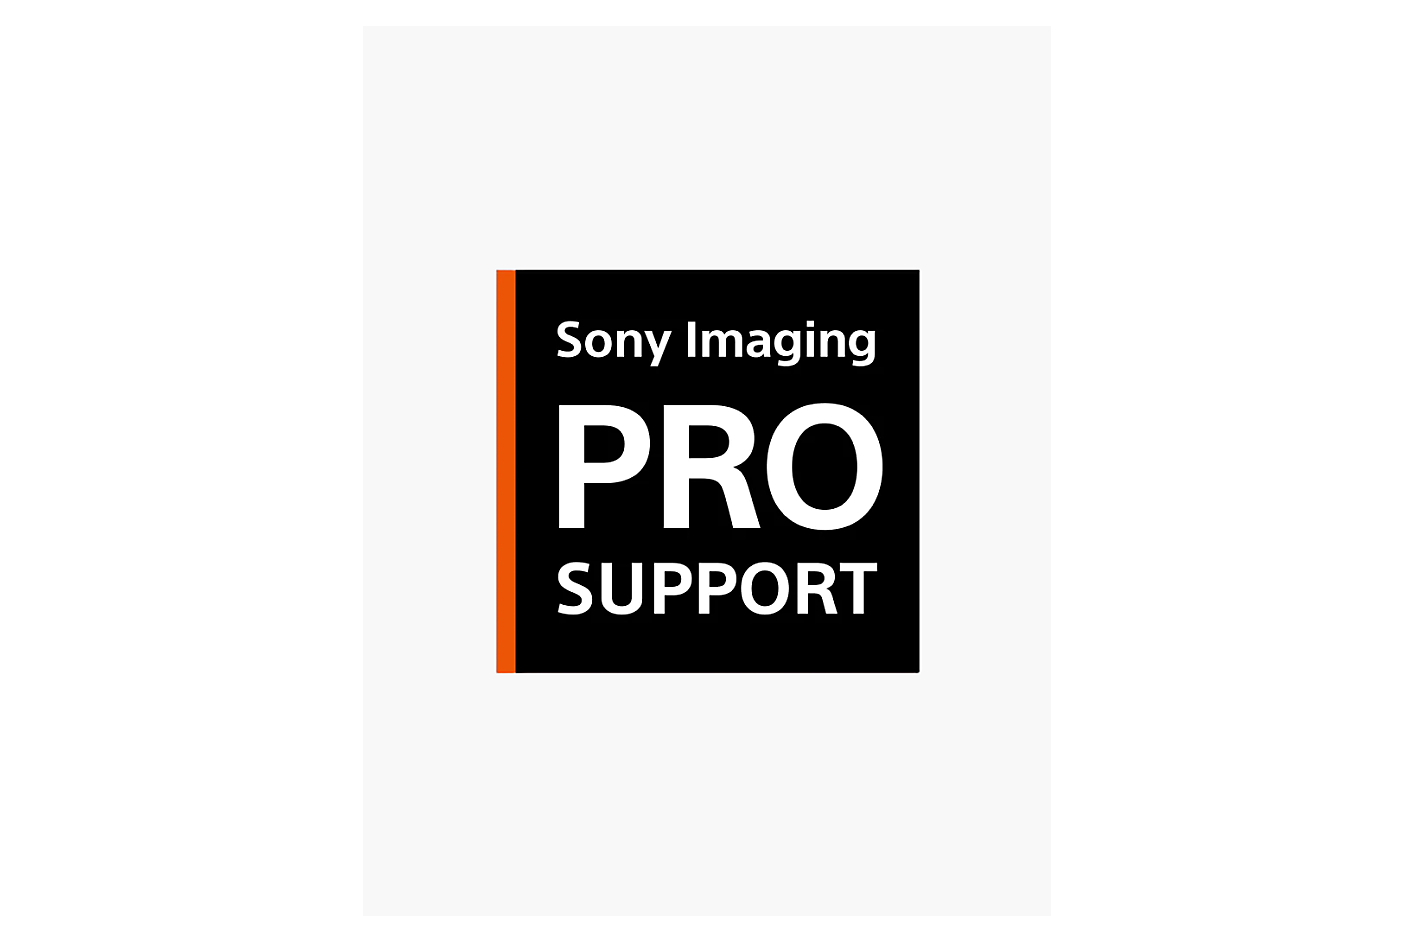 Λογότυπο υποστήριξης Sony Imaging Pro